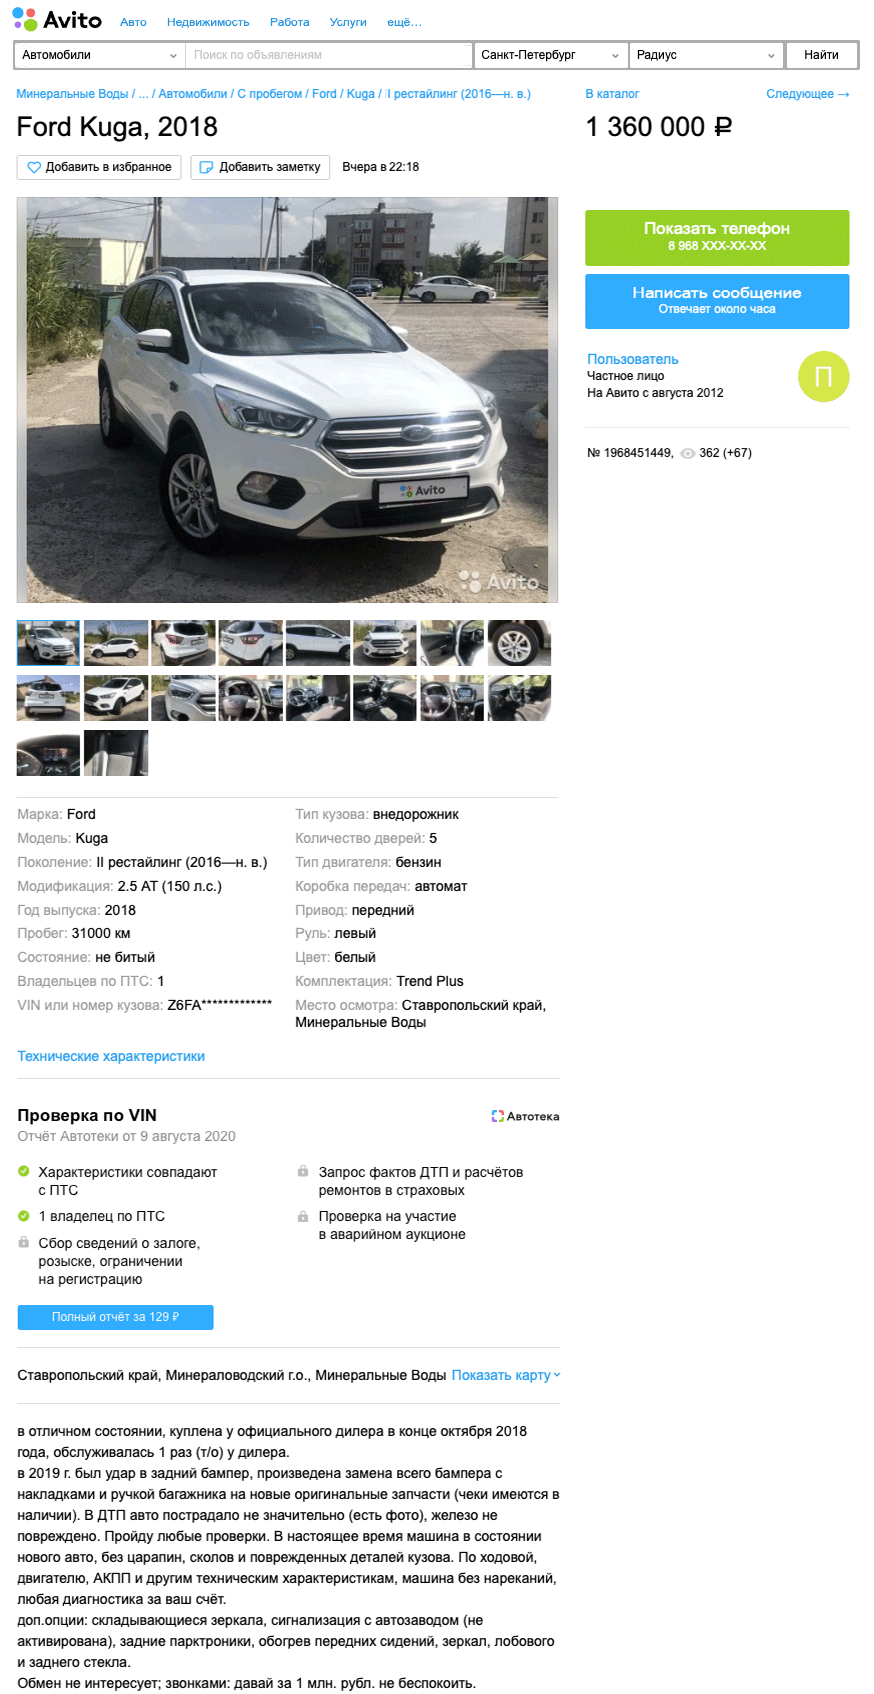 Можно попроще, можно посложнее: стоит ли покупать Ford Kuga II за 1,3 миллиона рублей